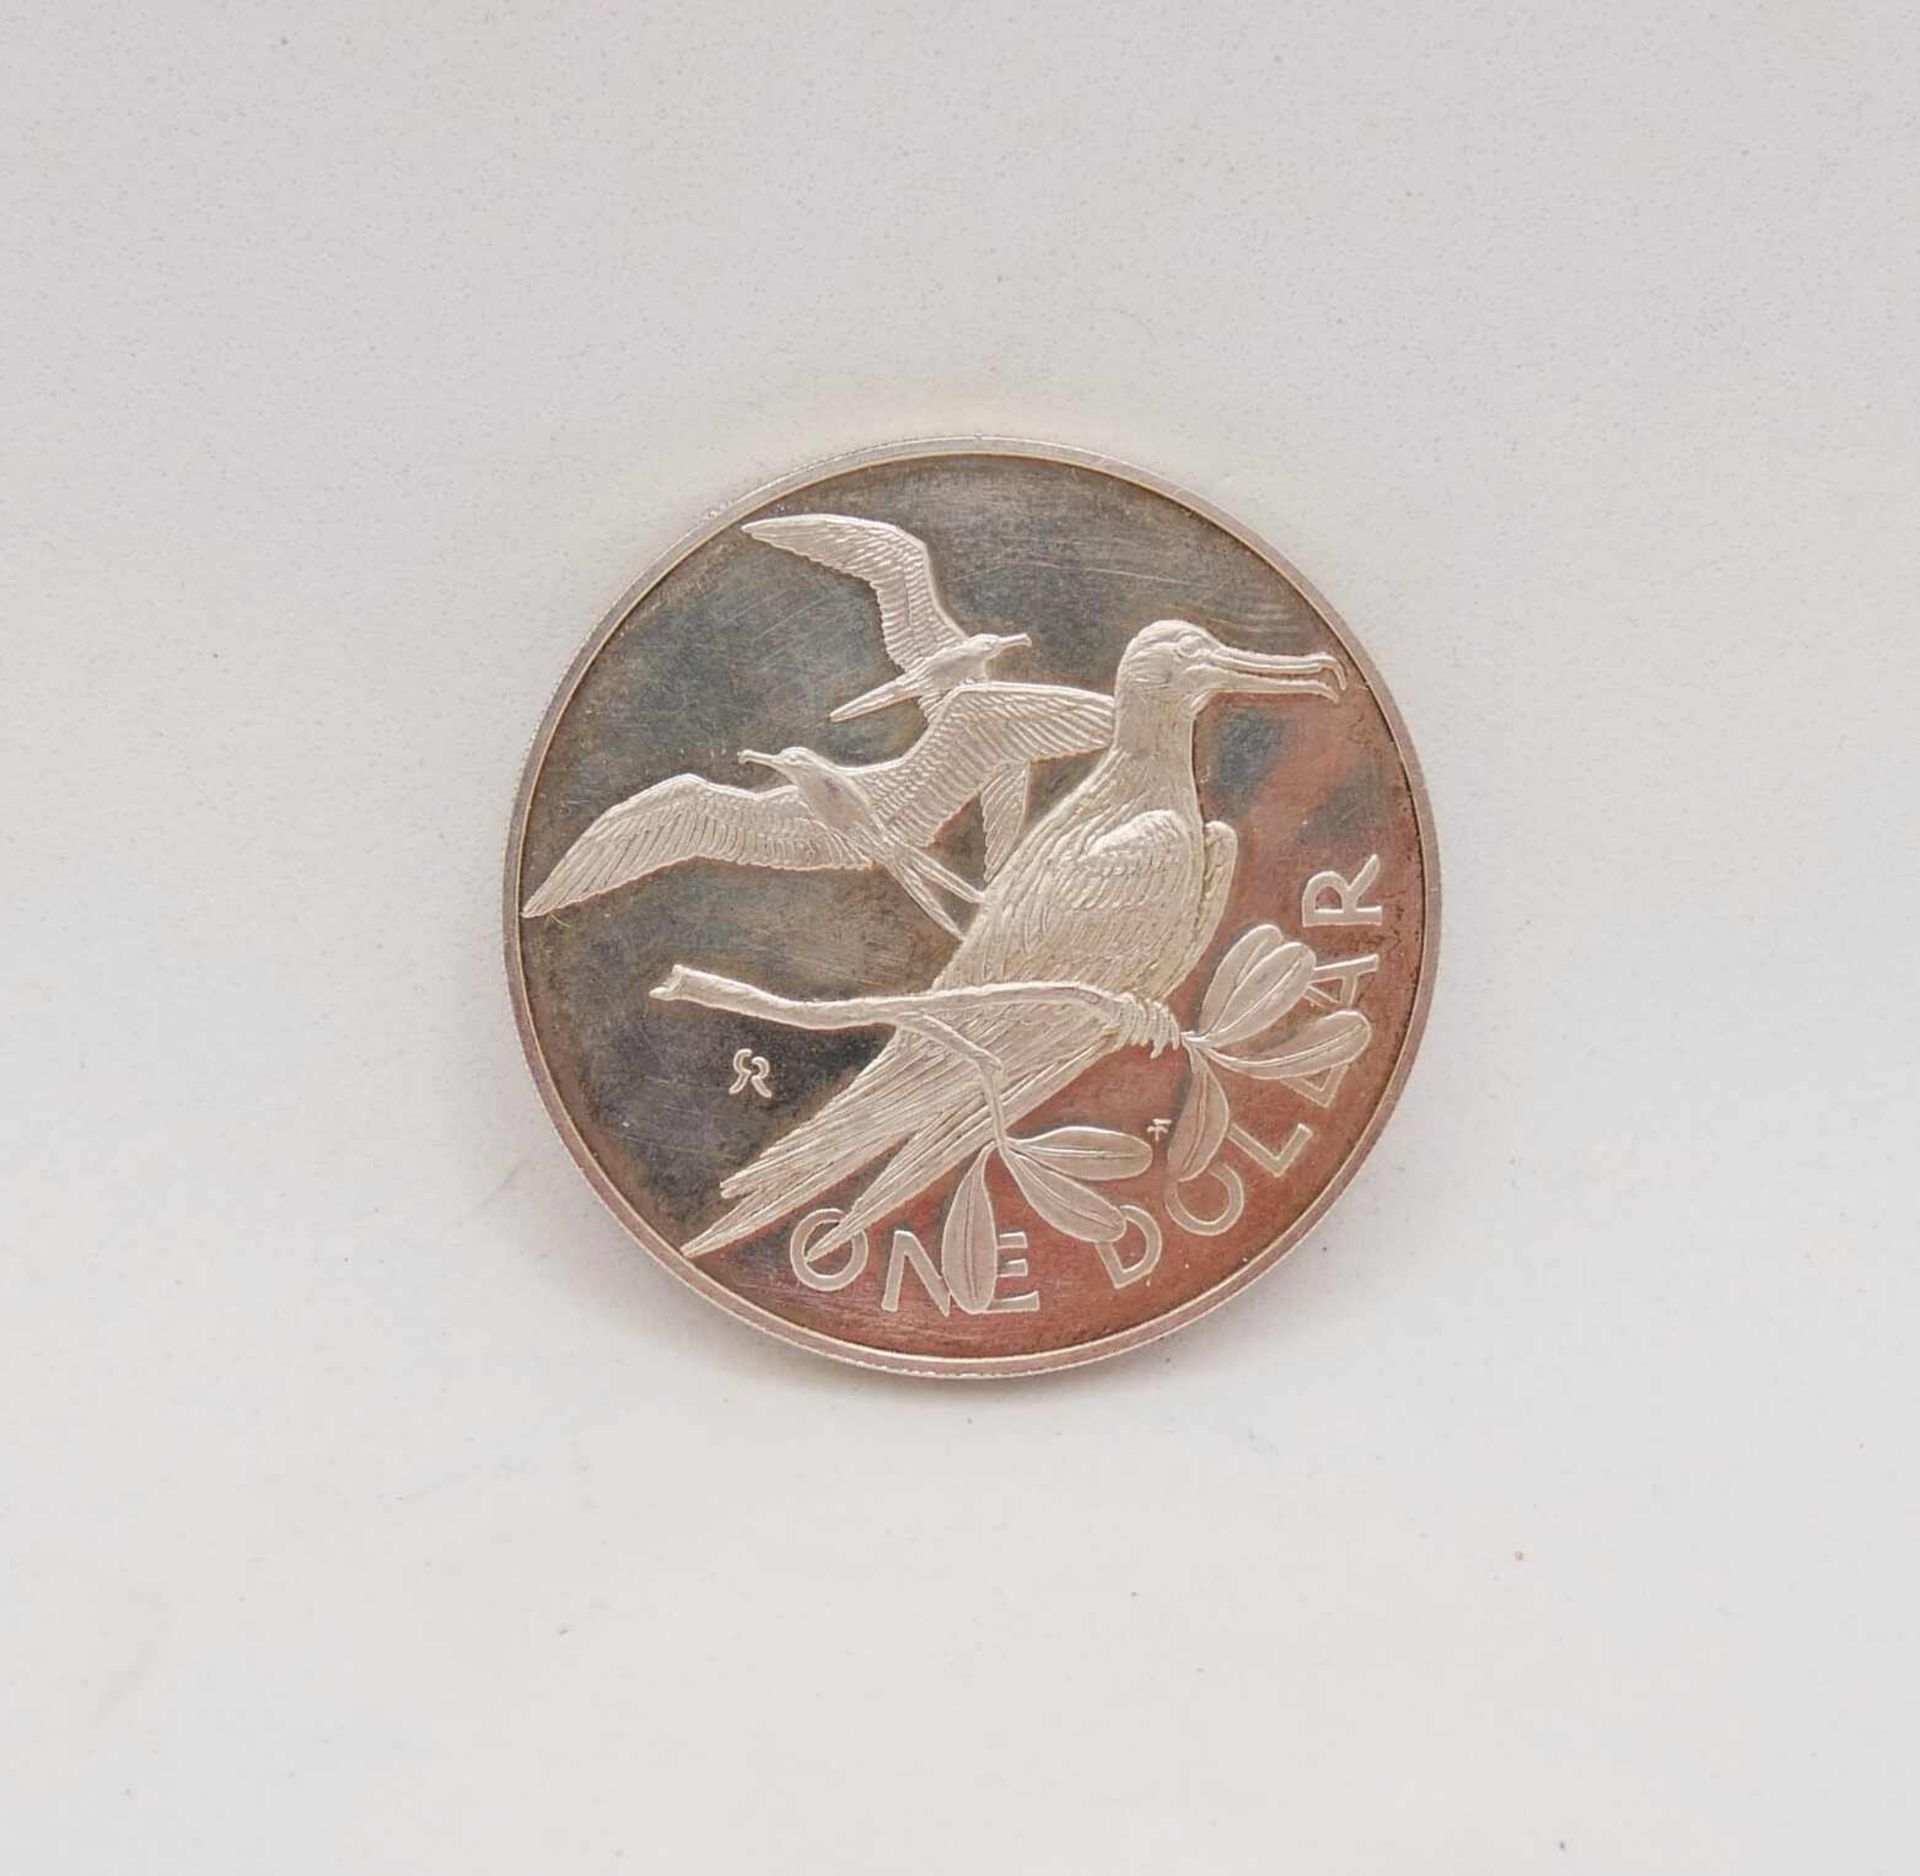 British Virgin Islands 1973, 1 Dollar, Motiv Fregattenvogel. Silber. Sehr guter Zustand. - Bild 2 aus 2